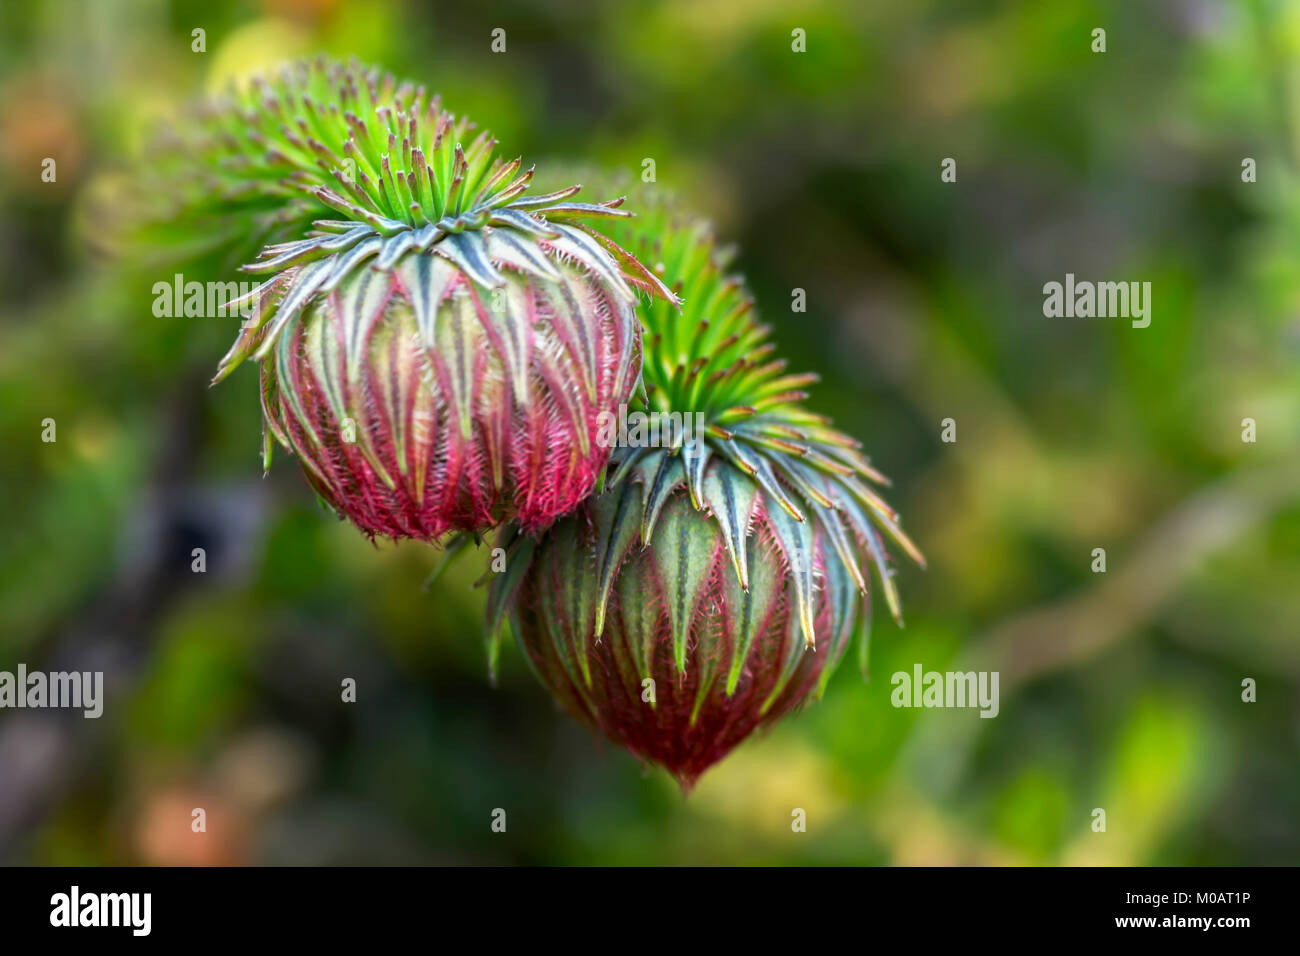 Darwinia neildiana ... Western Australian Wildflower Stock Photo